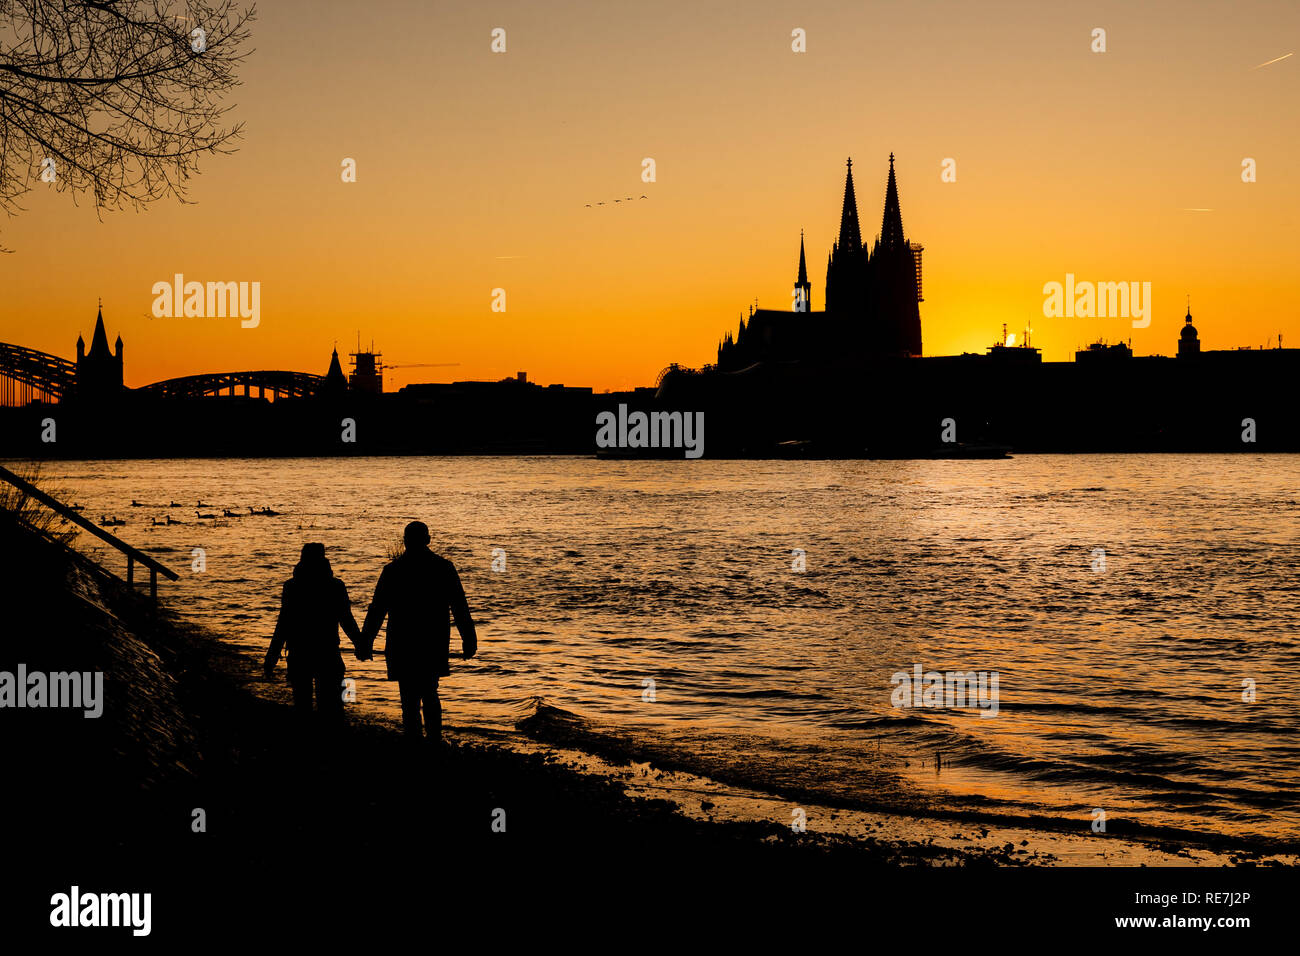 Ein Paar spaziert bei Sonnenuntergang am Ufer des Rheins. Im Hintergrund zeichnet sich der Kölner Dom ab. Foto Stock